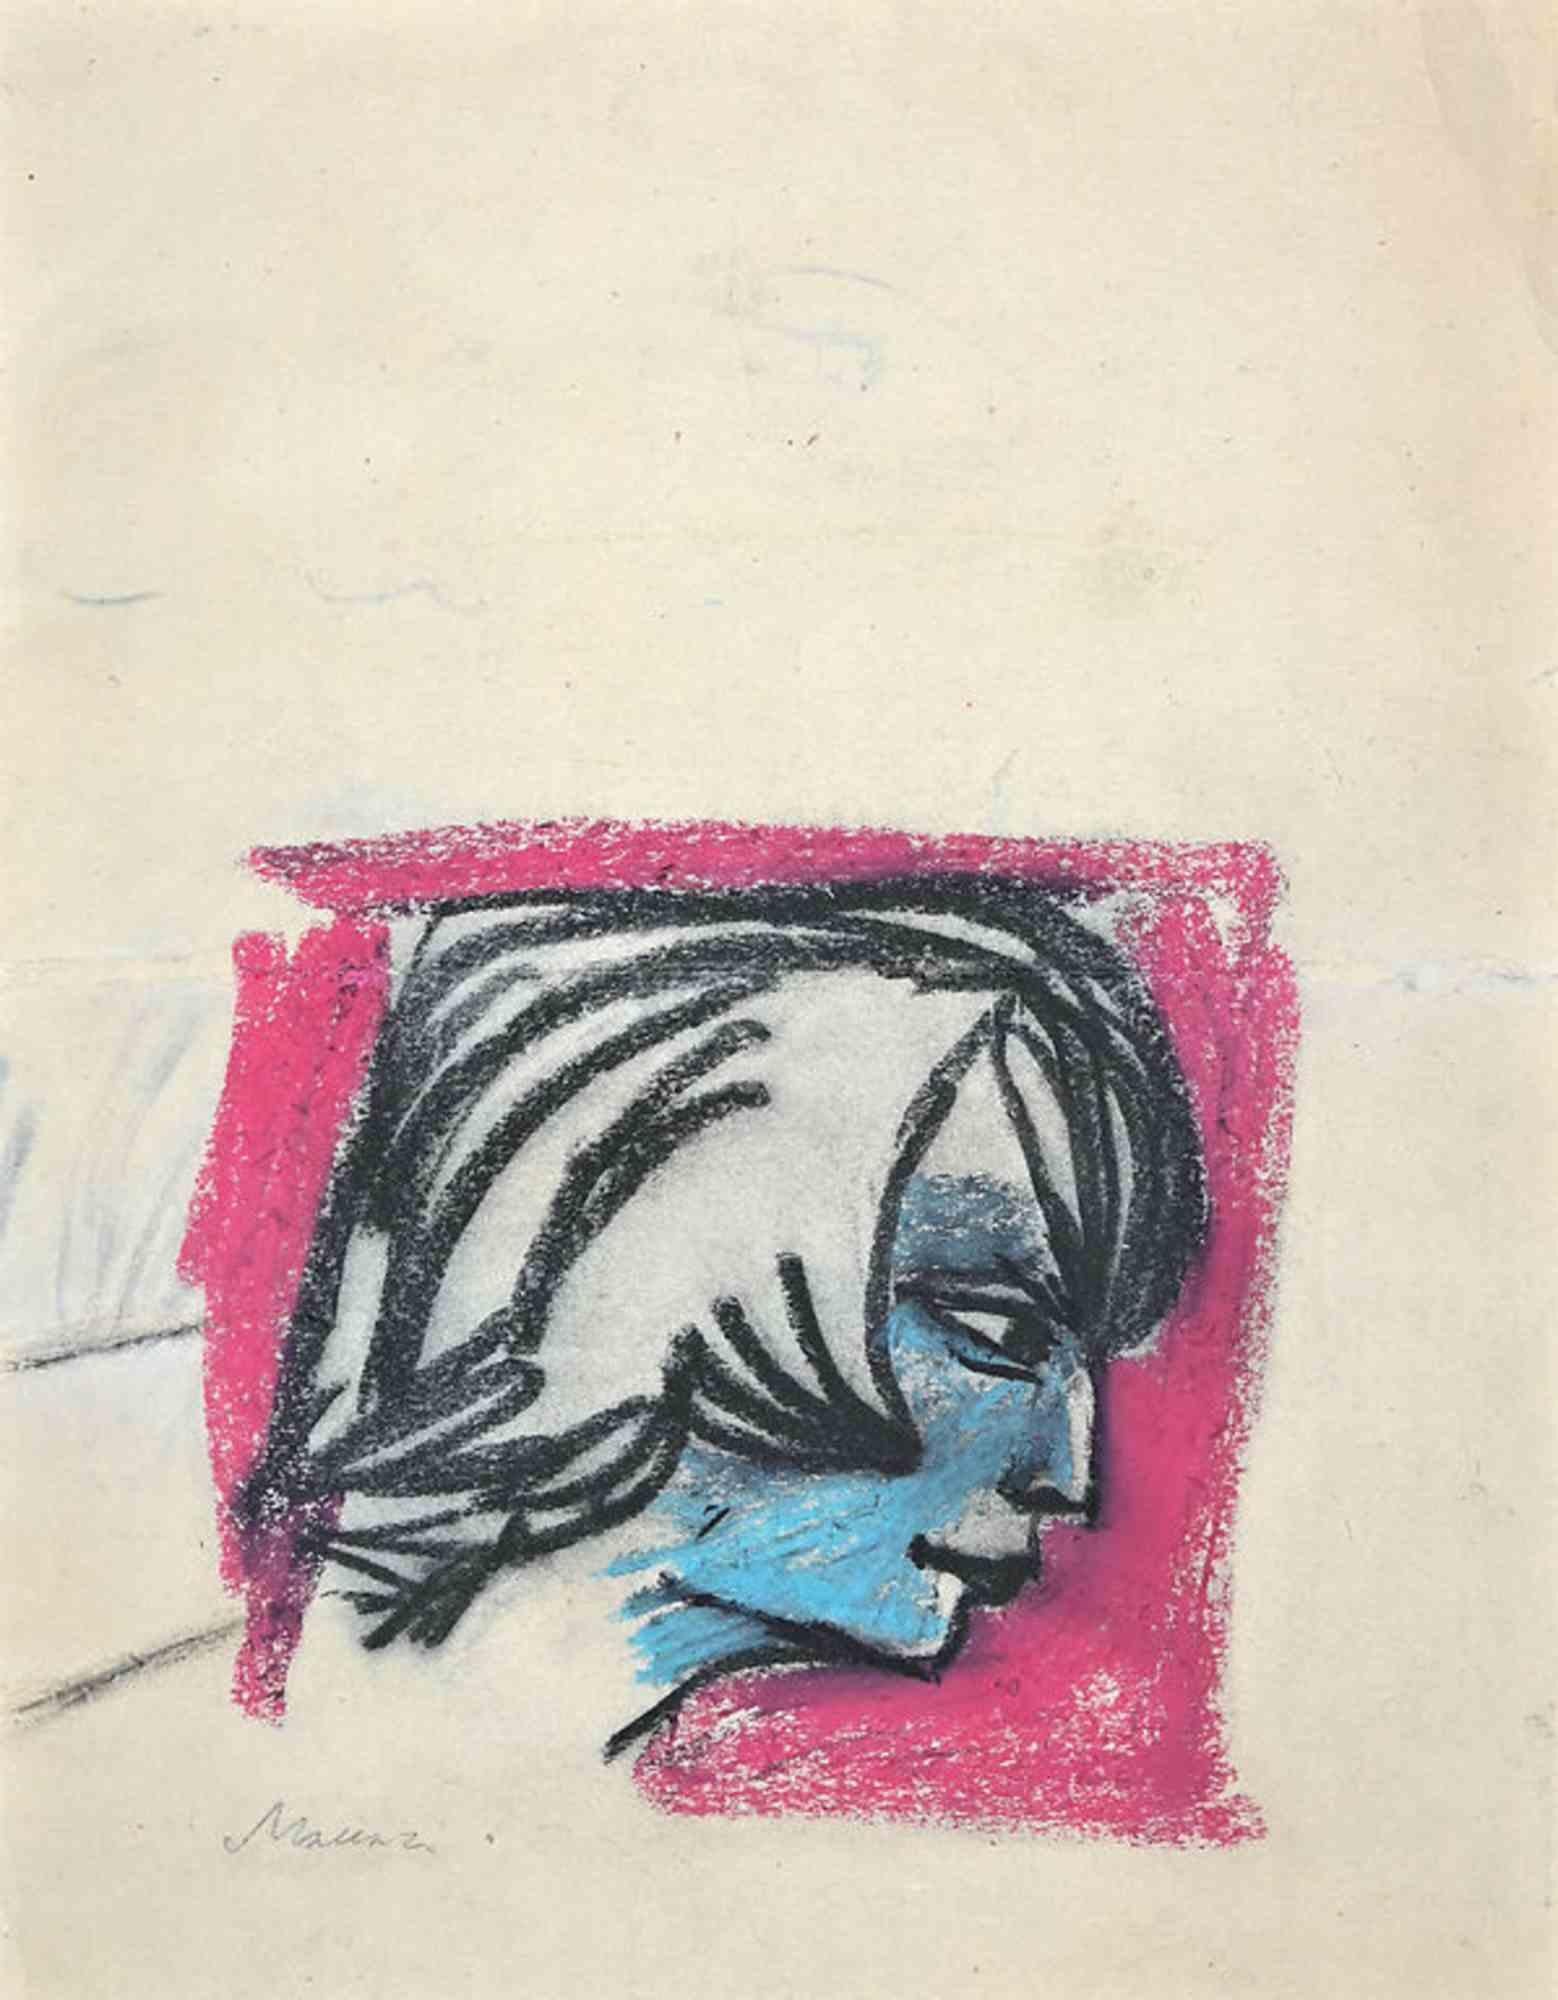 Porträt – Zeichnung von Mino Maccari – 1960er Jahre